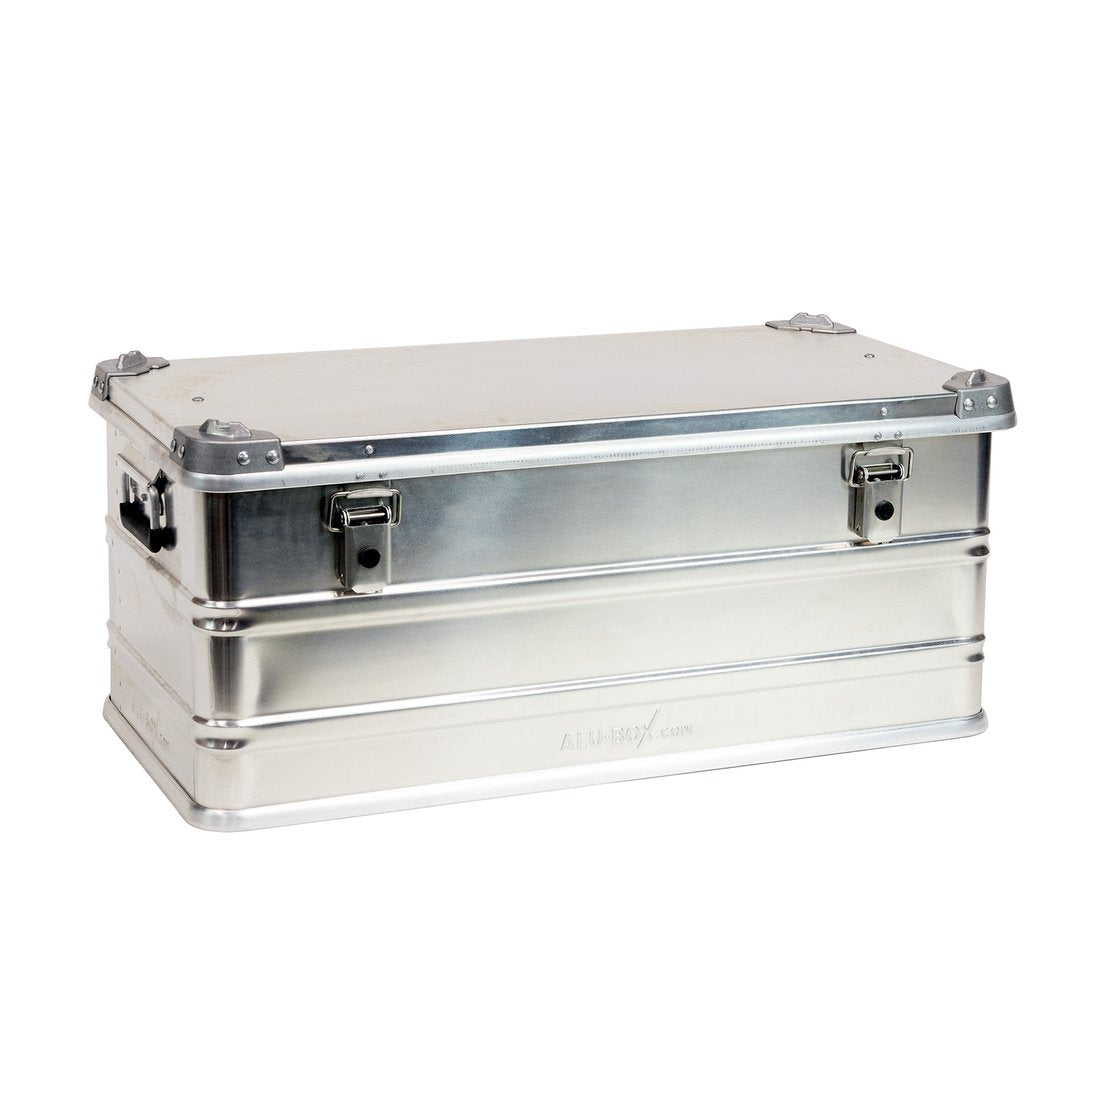 Vaultz Large Locking Storage Case with Dividers, White - VZ00068